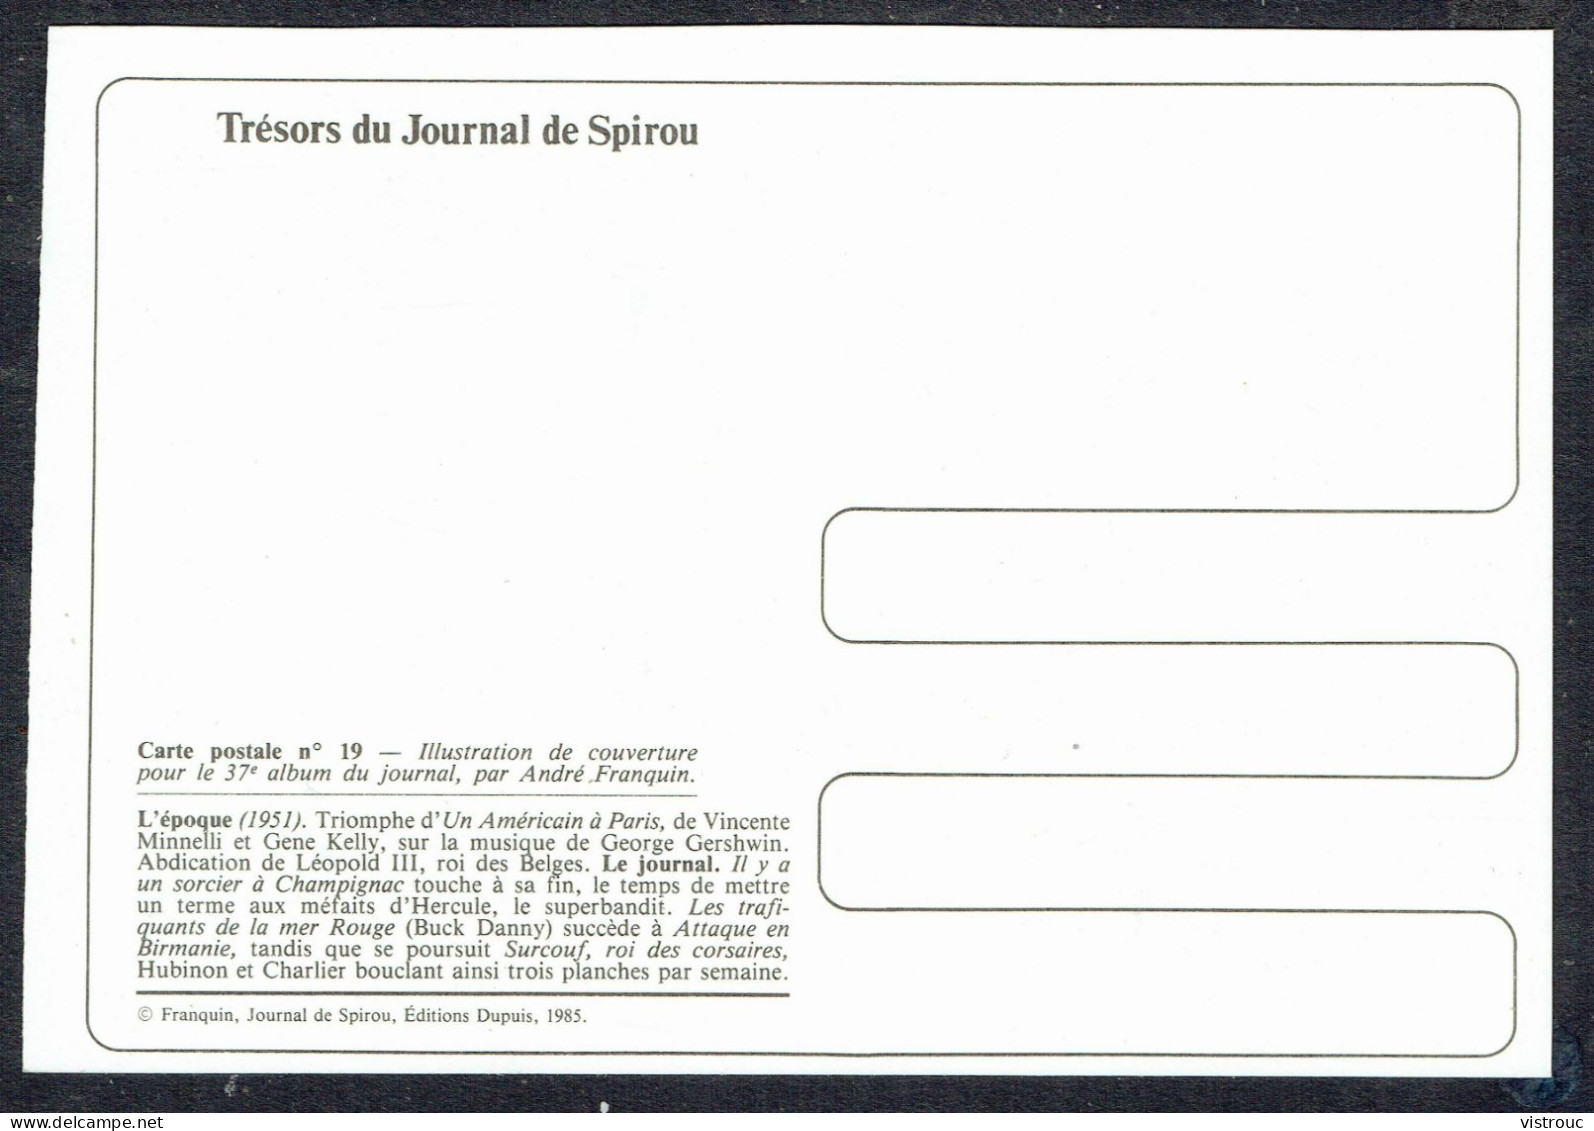 SPIROU - CP N° 19 : Illustration Couverture Album N° 37 De FRANQUIN - Non Circulé - Not Circulated - Ed. DUPUIS - 1985. - Bandes Dessinées